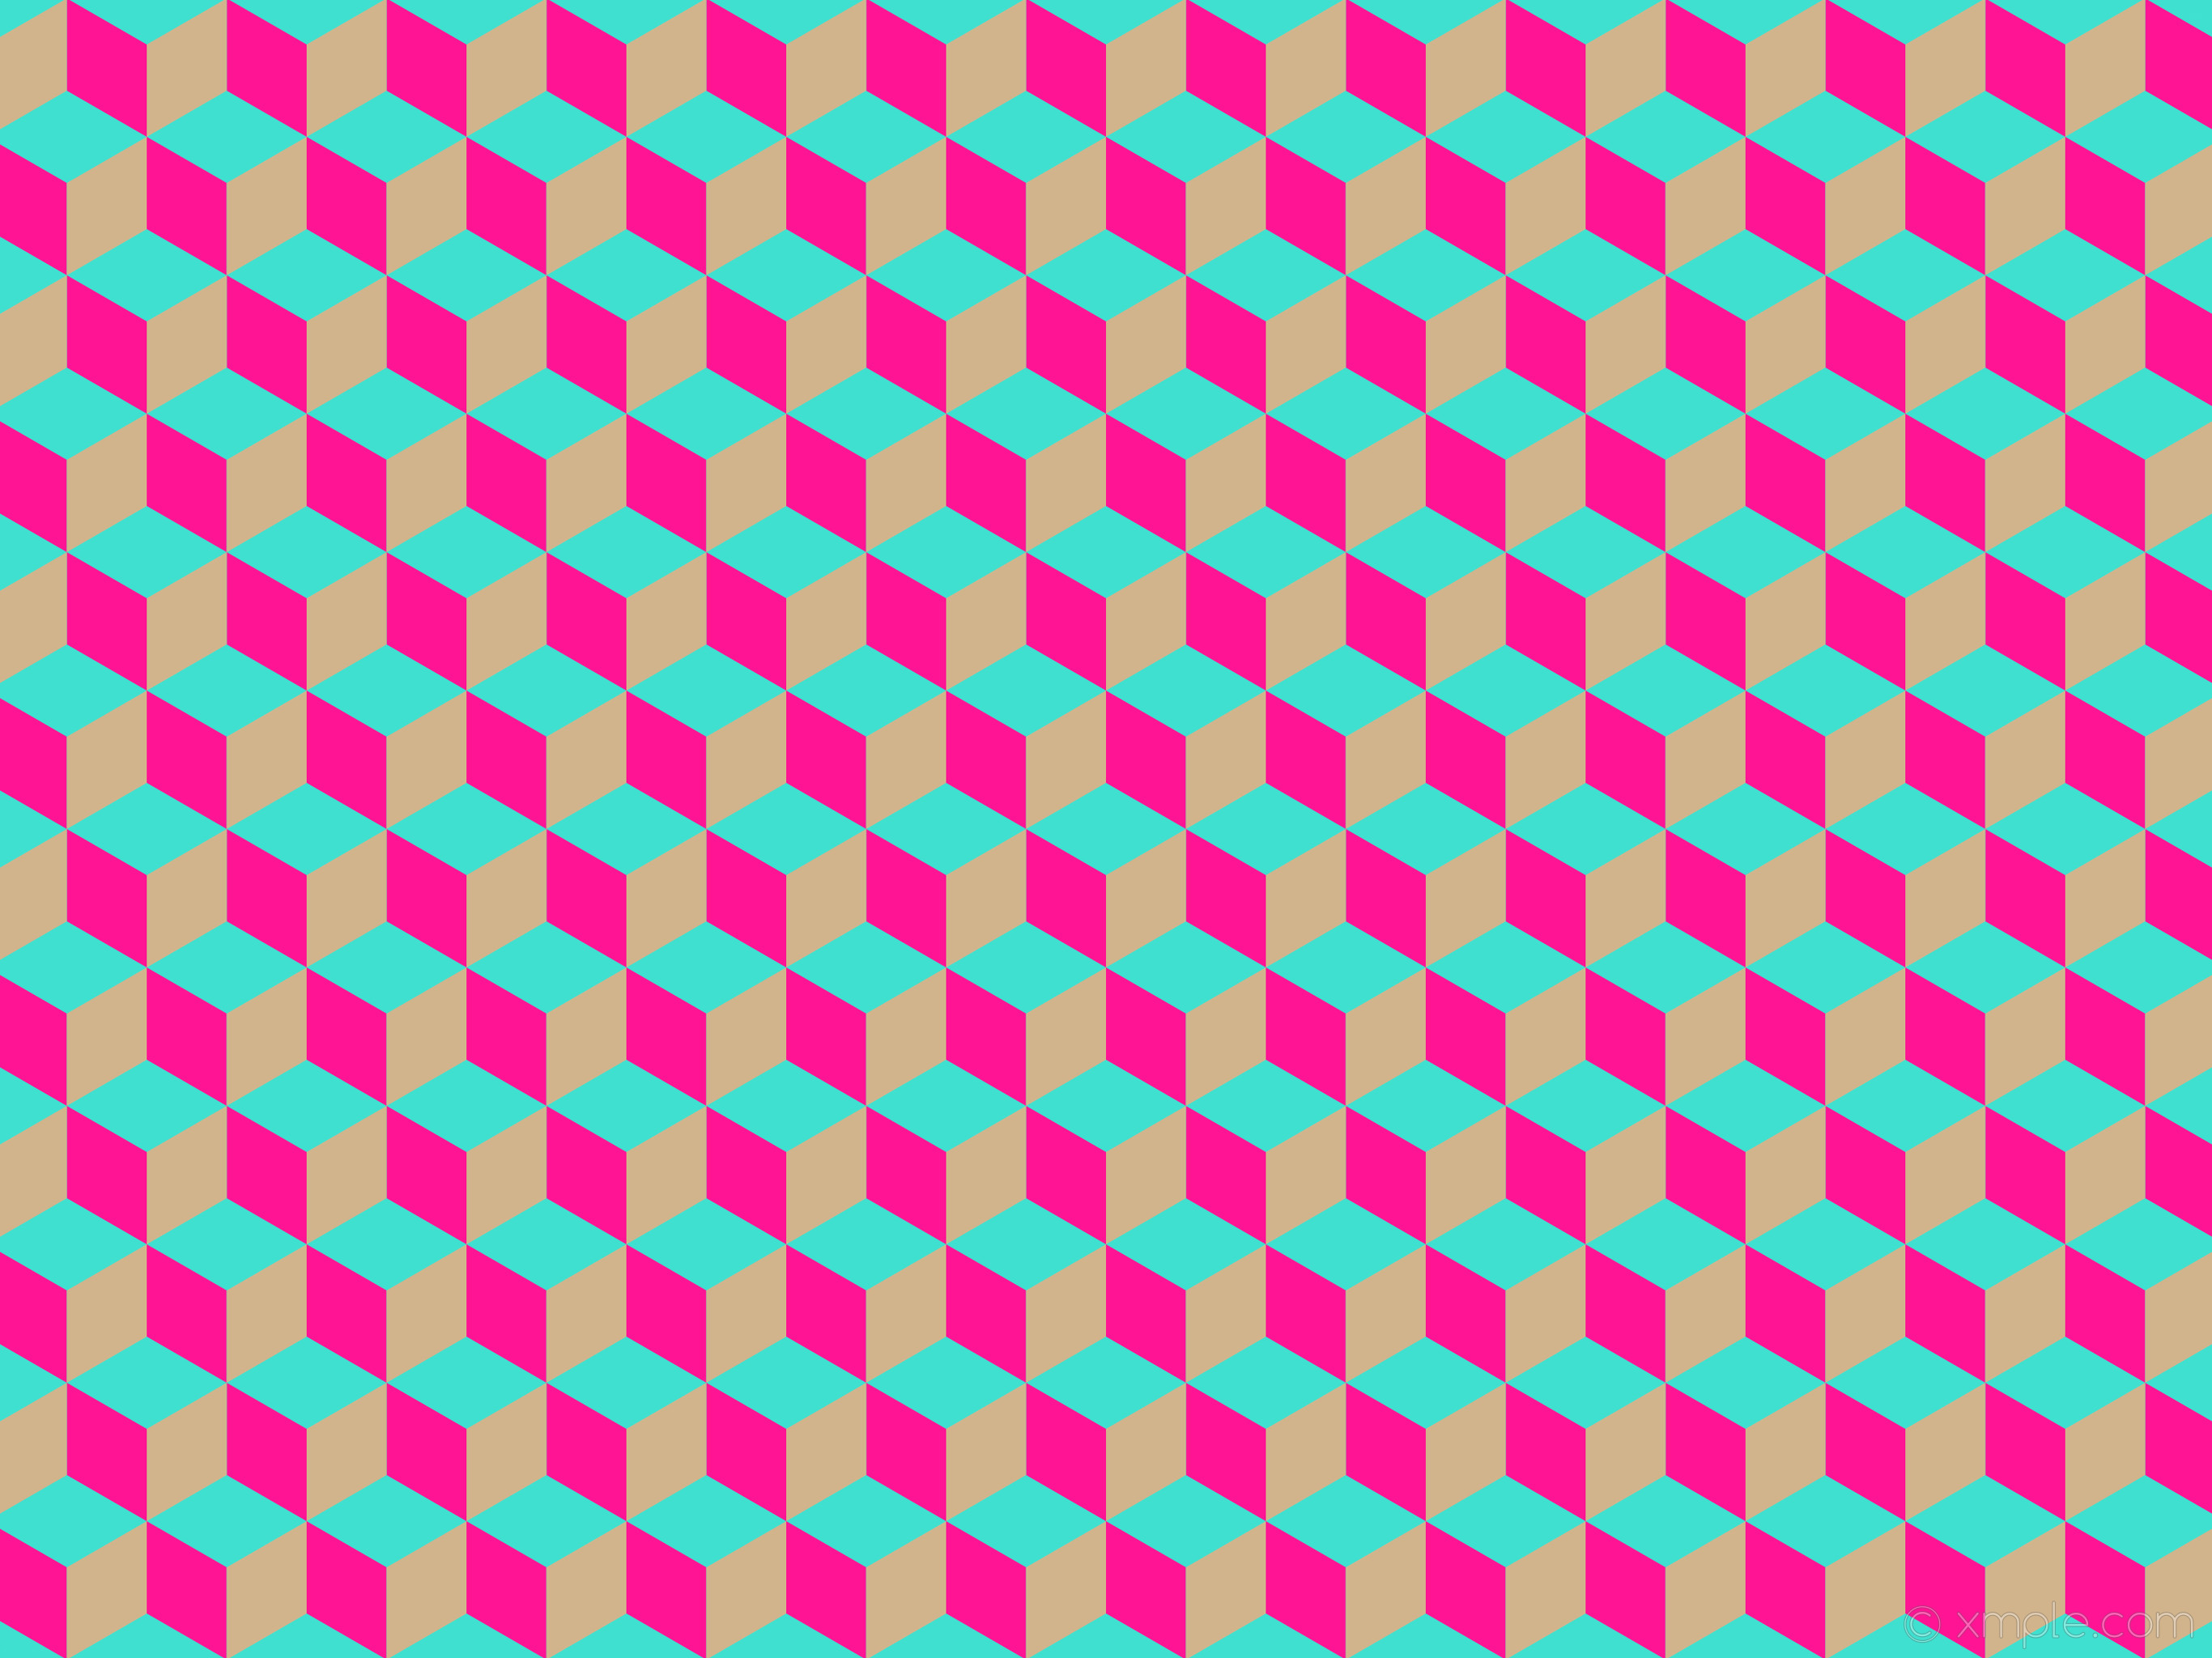 2732x2048 Wallpaper Pink Blue Brown 3d Cubes 40e0d0 Ff1493 D2b48c 114px   2048x2732. how to become ...